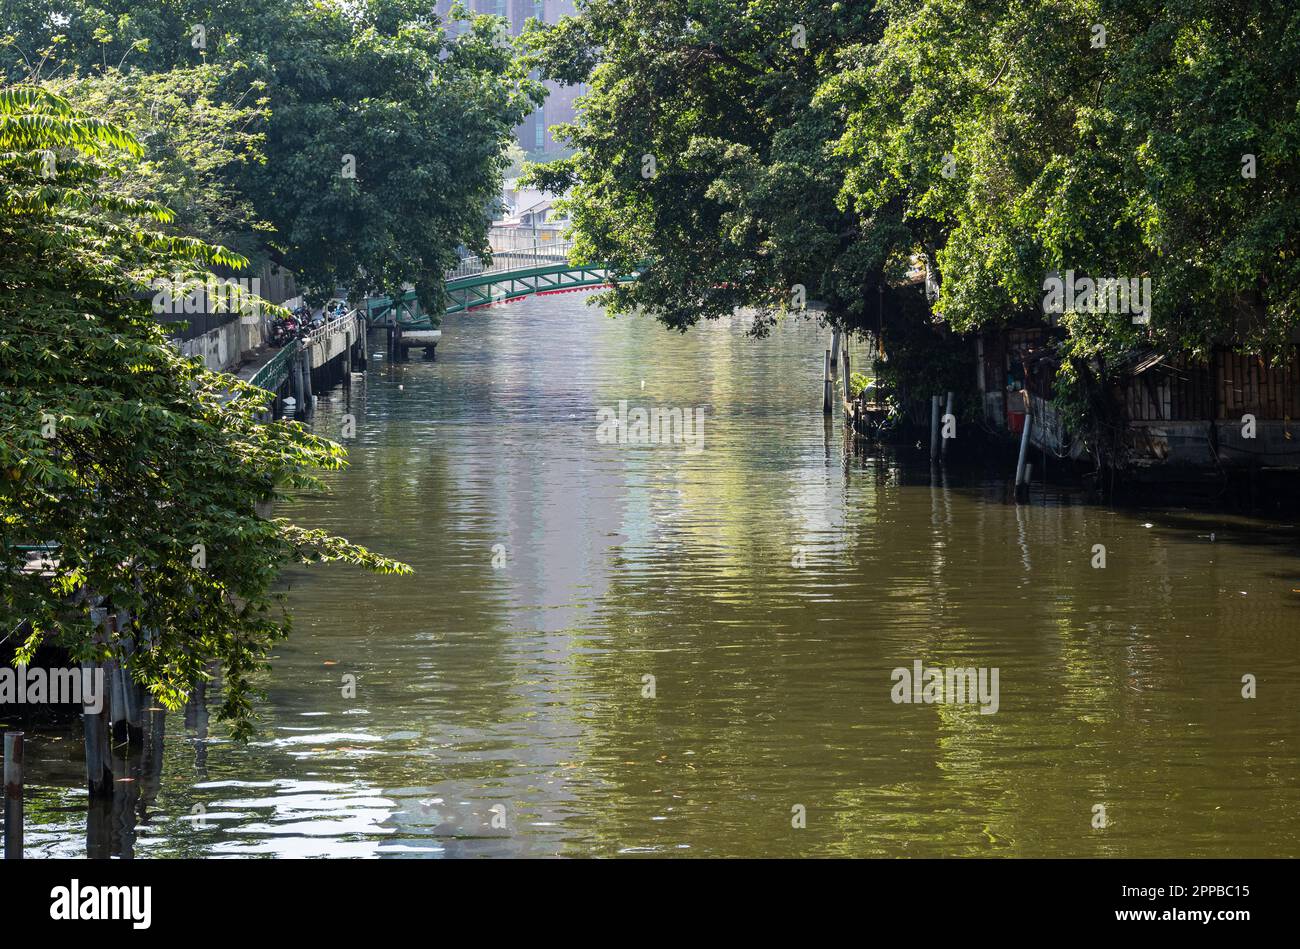 Khlong ist ein in Thailand verwendeter Begriff für einen Kanal oder eine Wasserstraße, der von Menschen geschaffen wurde und in der Regel mit einem Fluss oder Meer verbunden ist. Viele Kanäle sind da Stockfoto